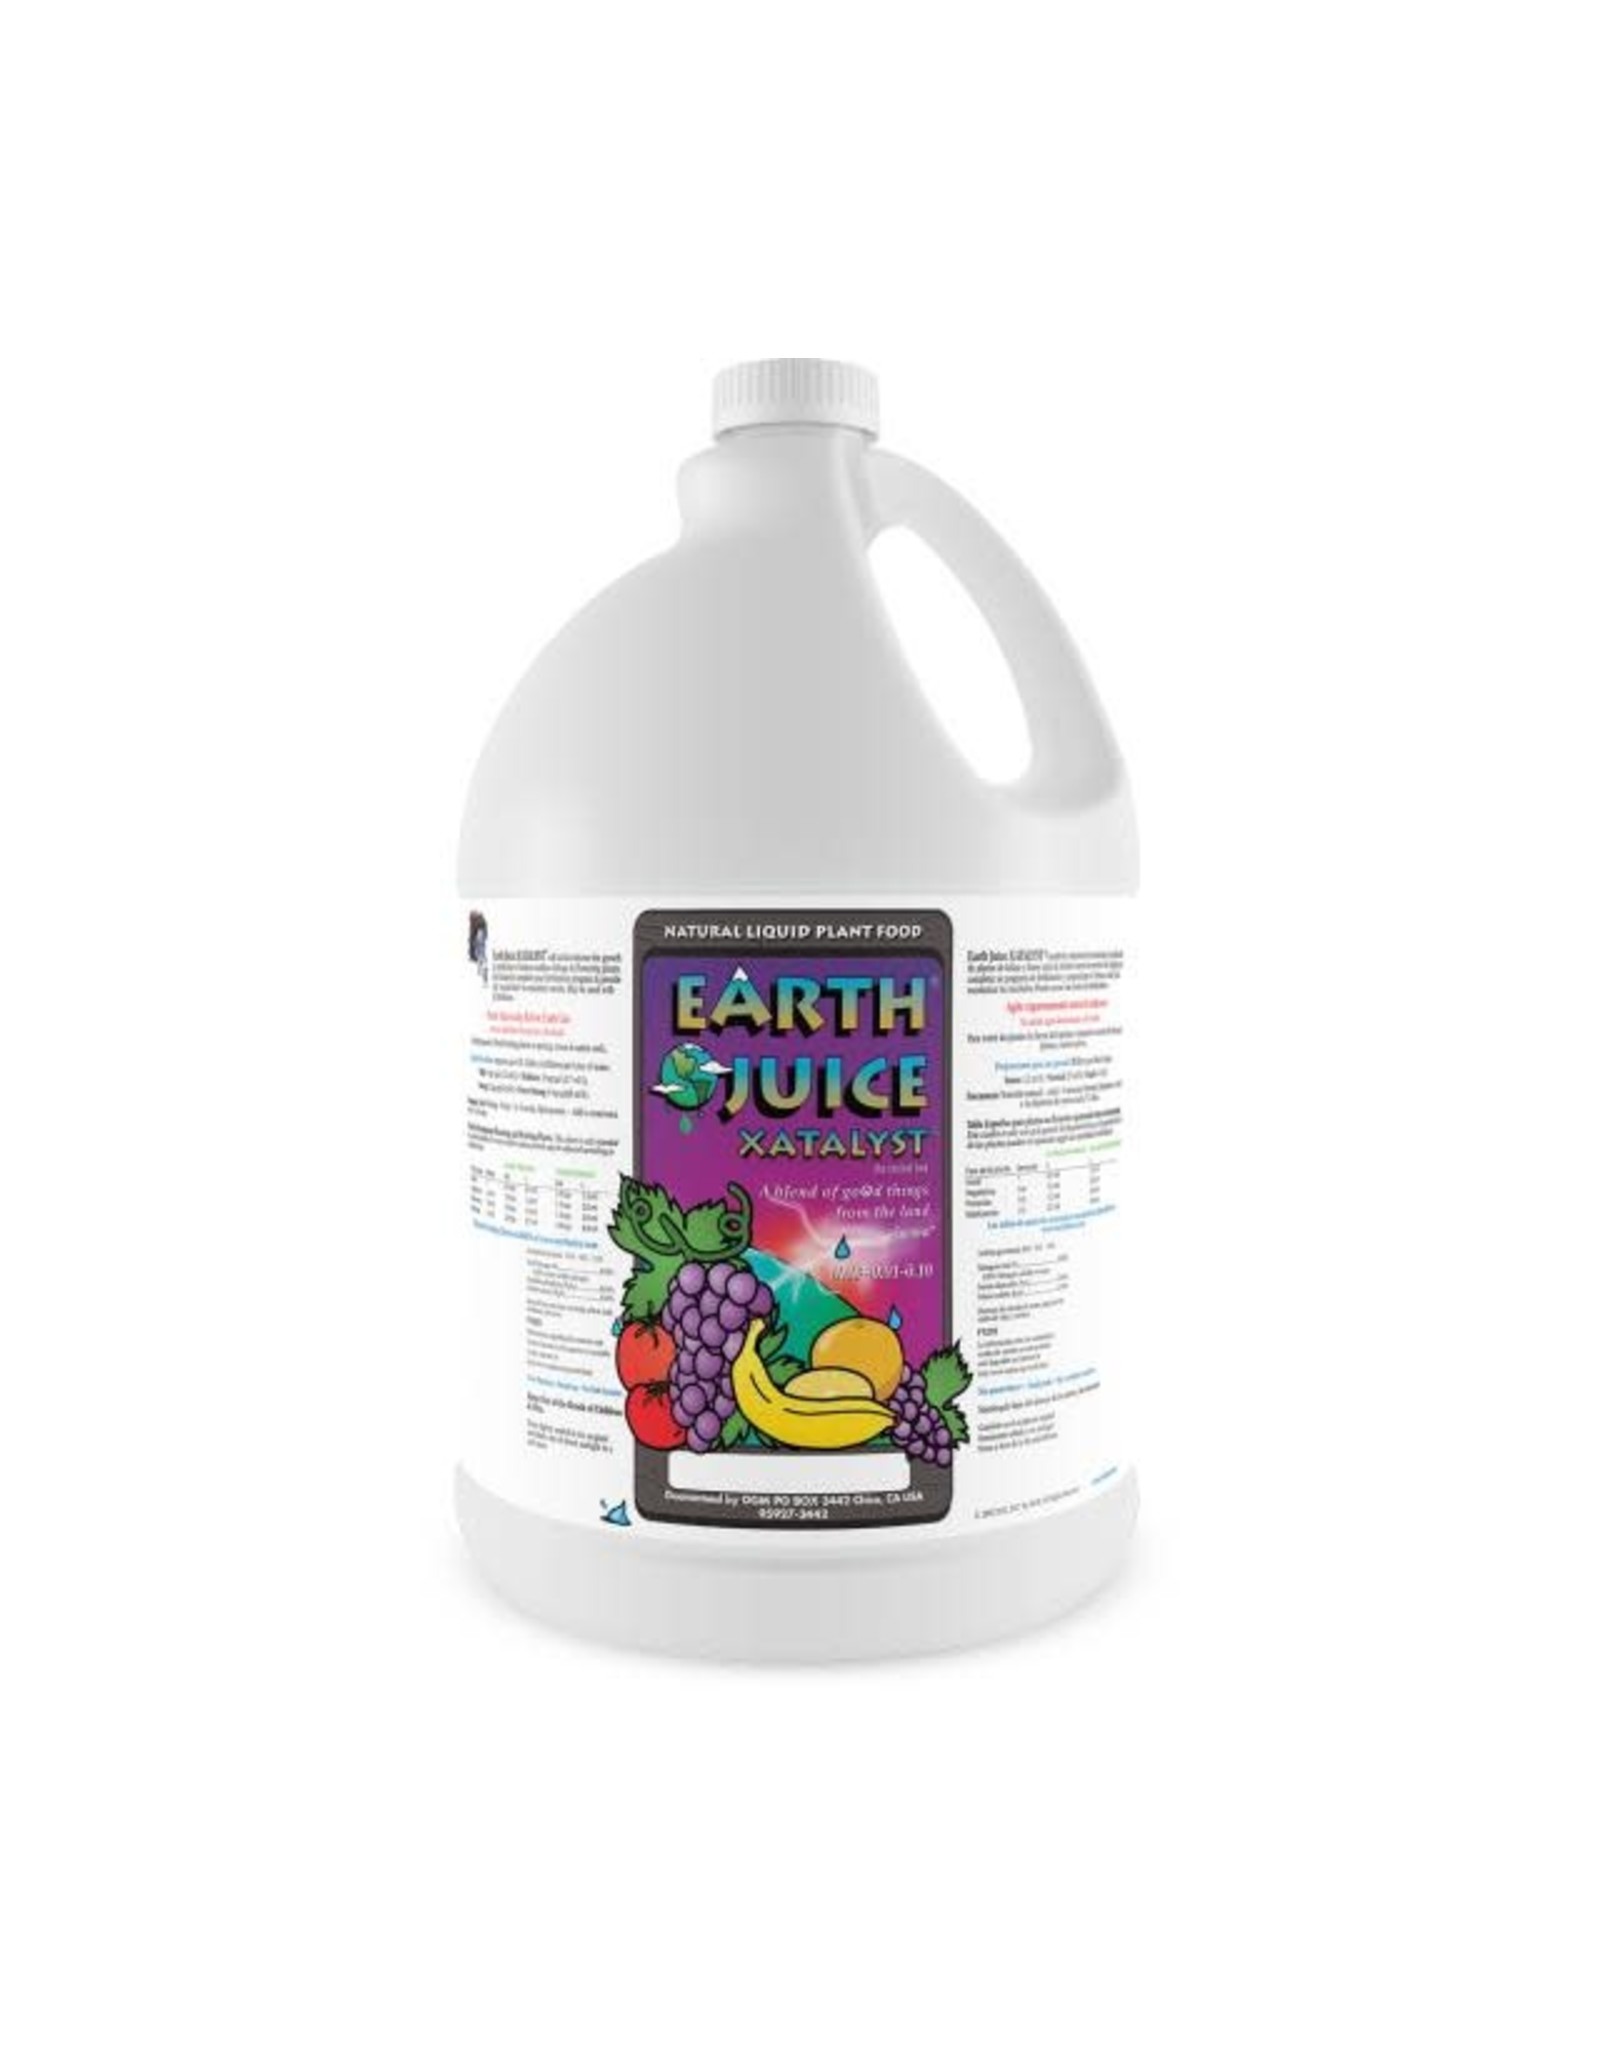 Earth Juice Earth Juice Xatalyst, 1 gal